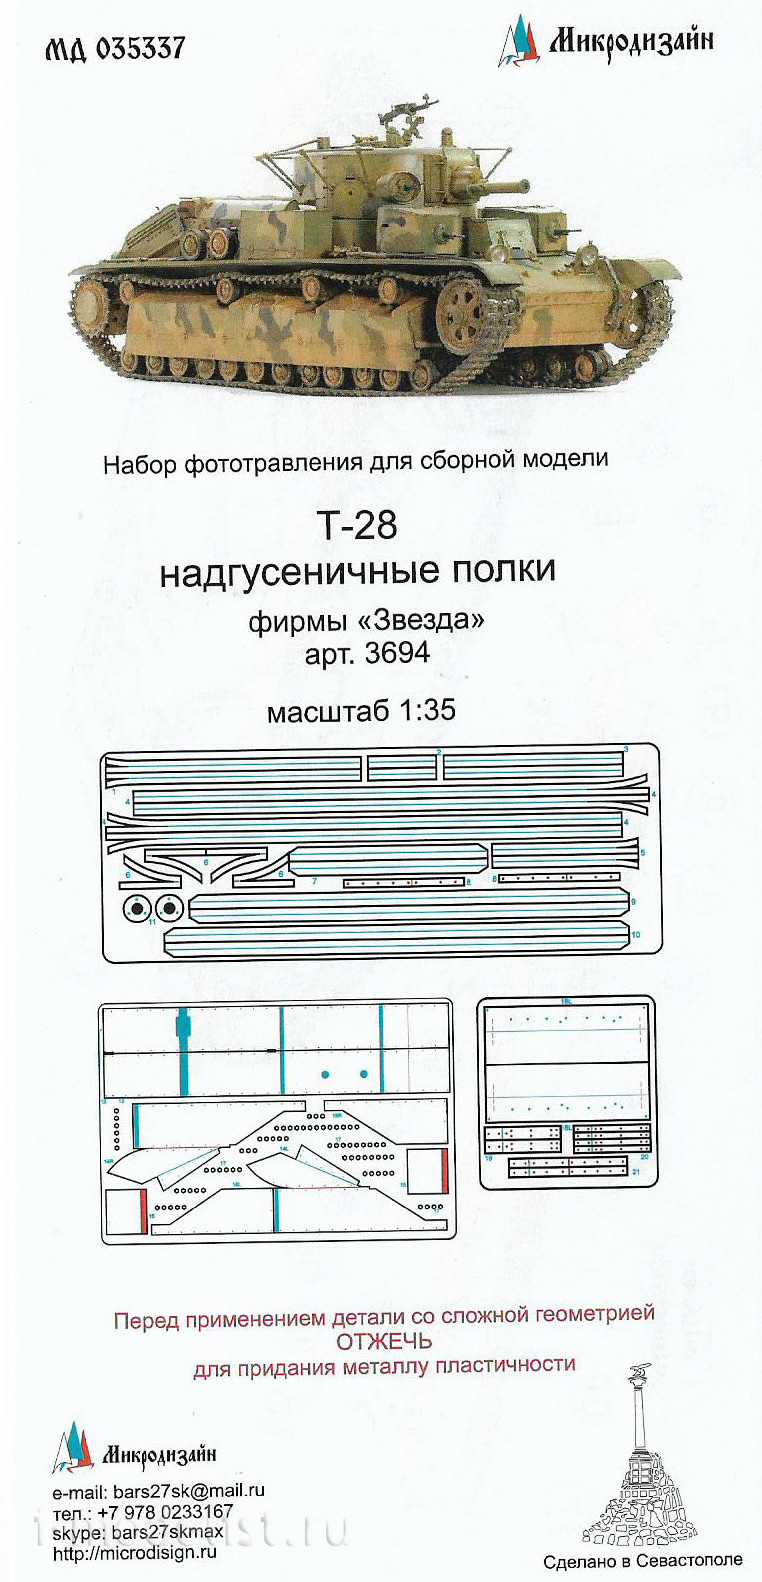 035337 Microdesign 1/35 T-28 fenders (Zvezda)